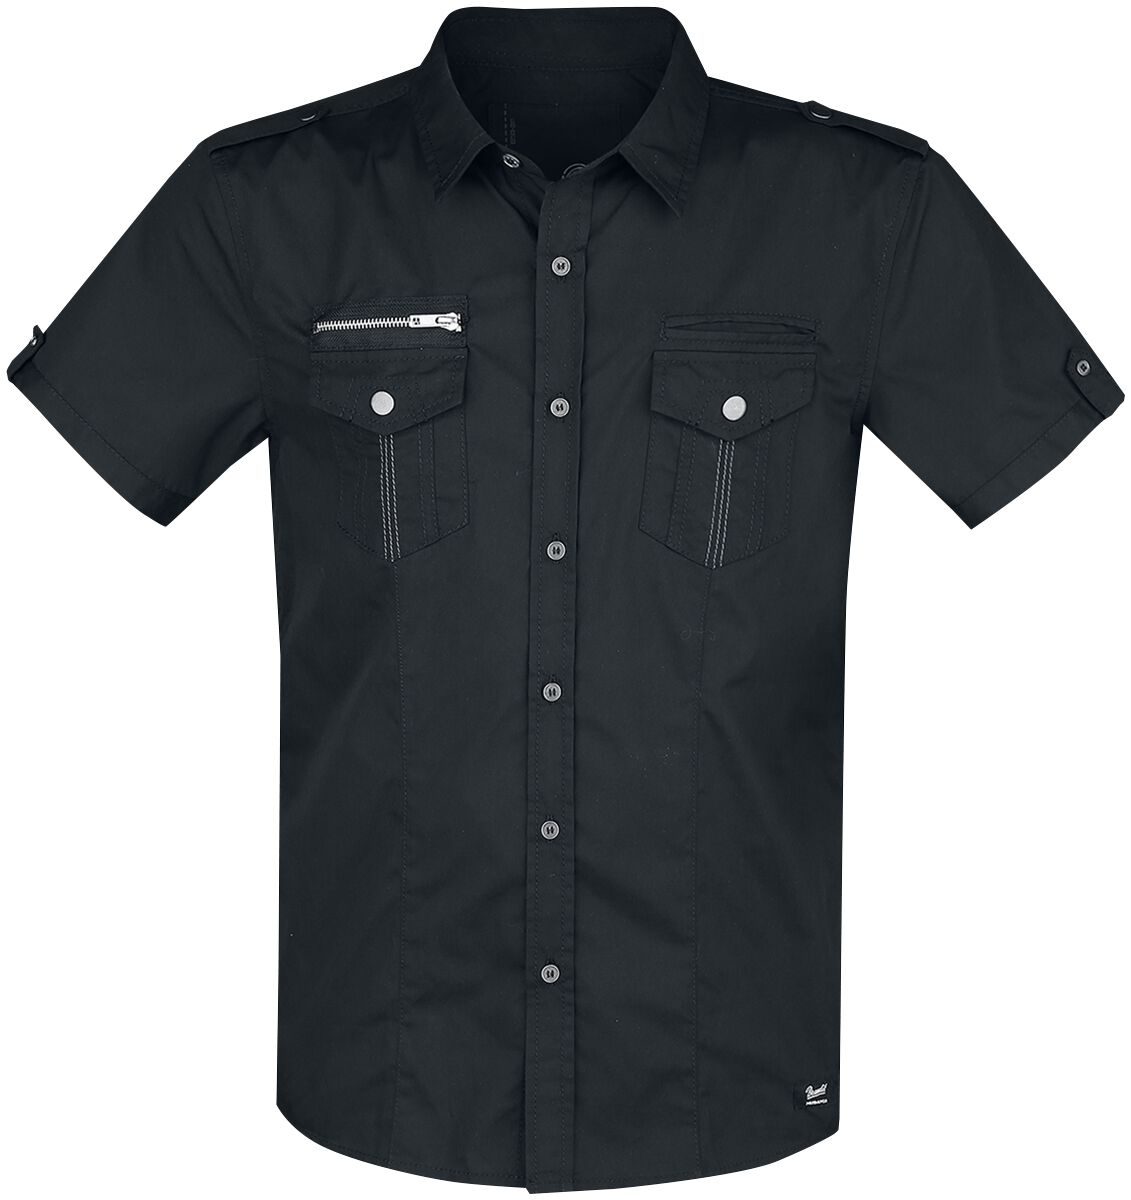 Brandit Rockstar Shirt T/C Kurzarmhemd schwarz in 4XL